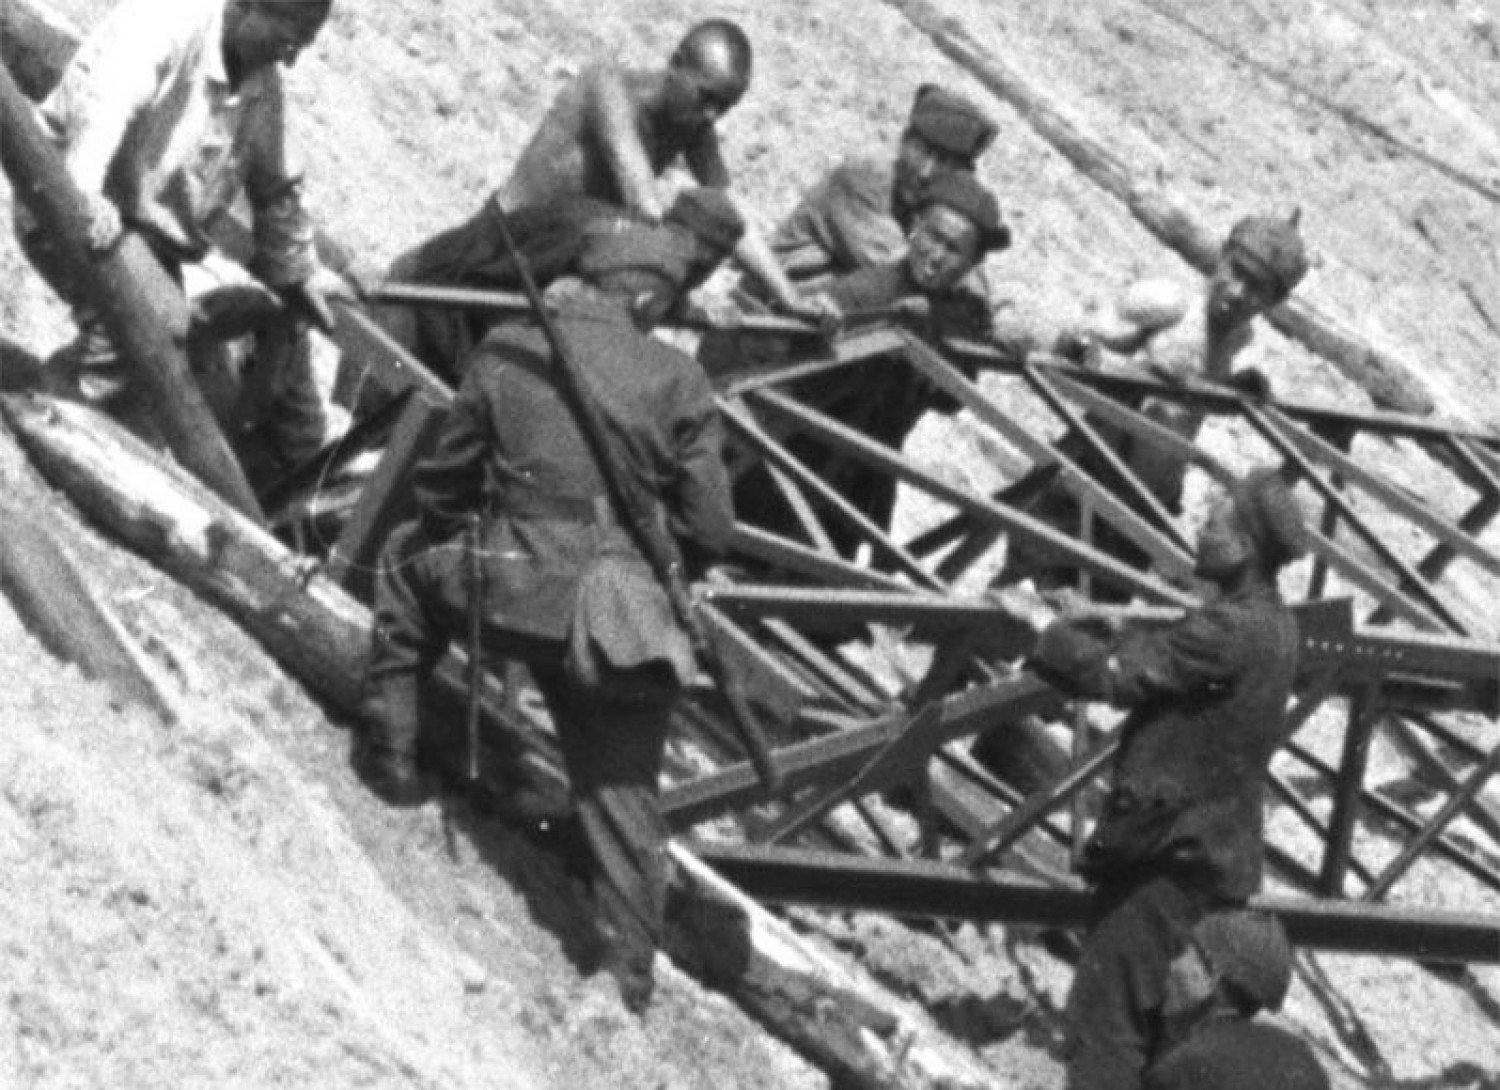 Ein Soldat packt am Gerüst mit an, so dass die Gruppe es gemeinsam bewegen kann.  